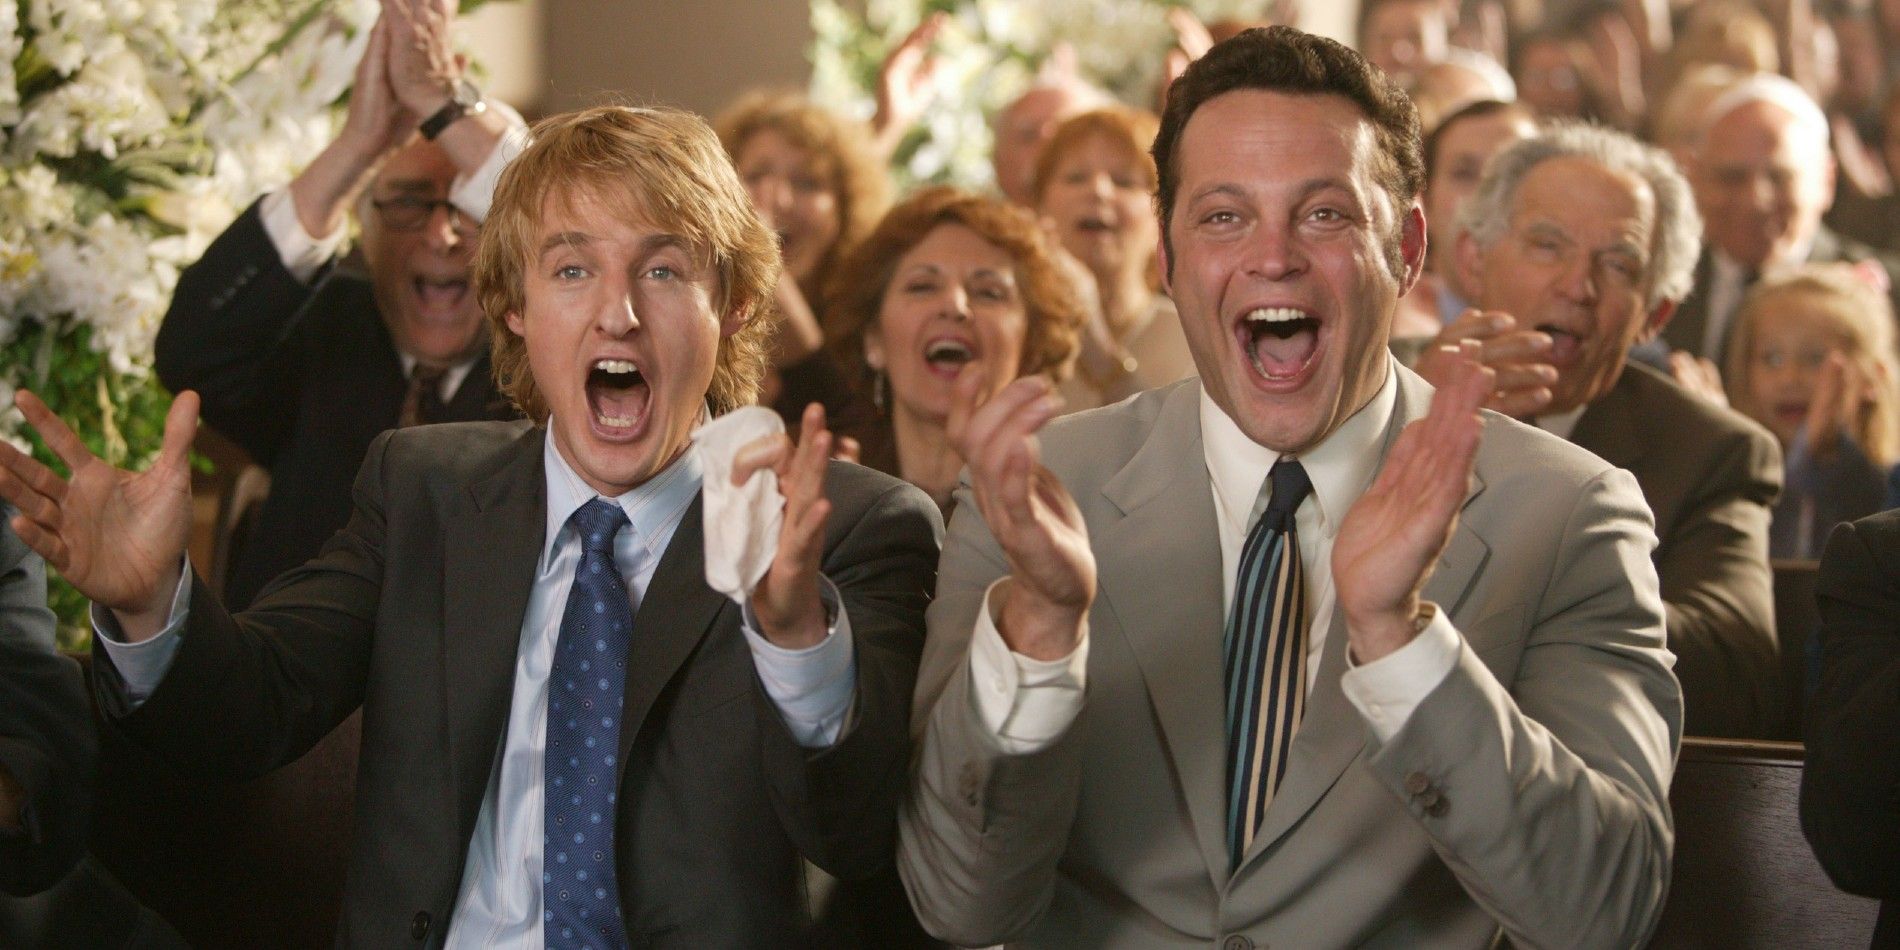 Vince Vaughn and Owen Wilson in Wedding Crashers